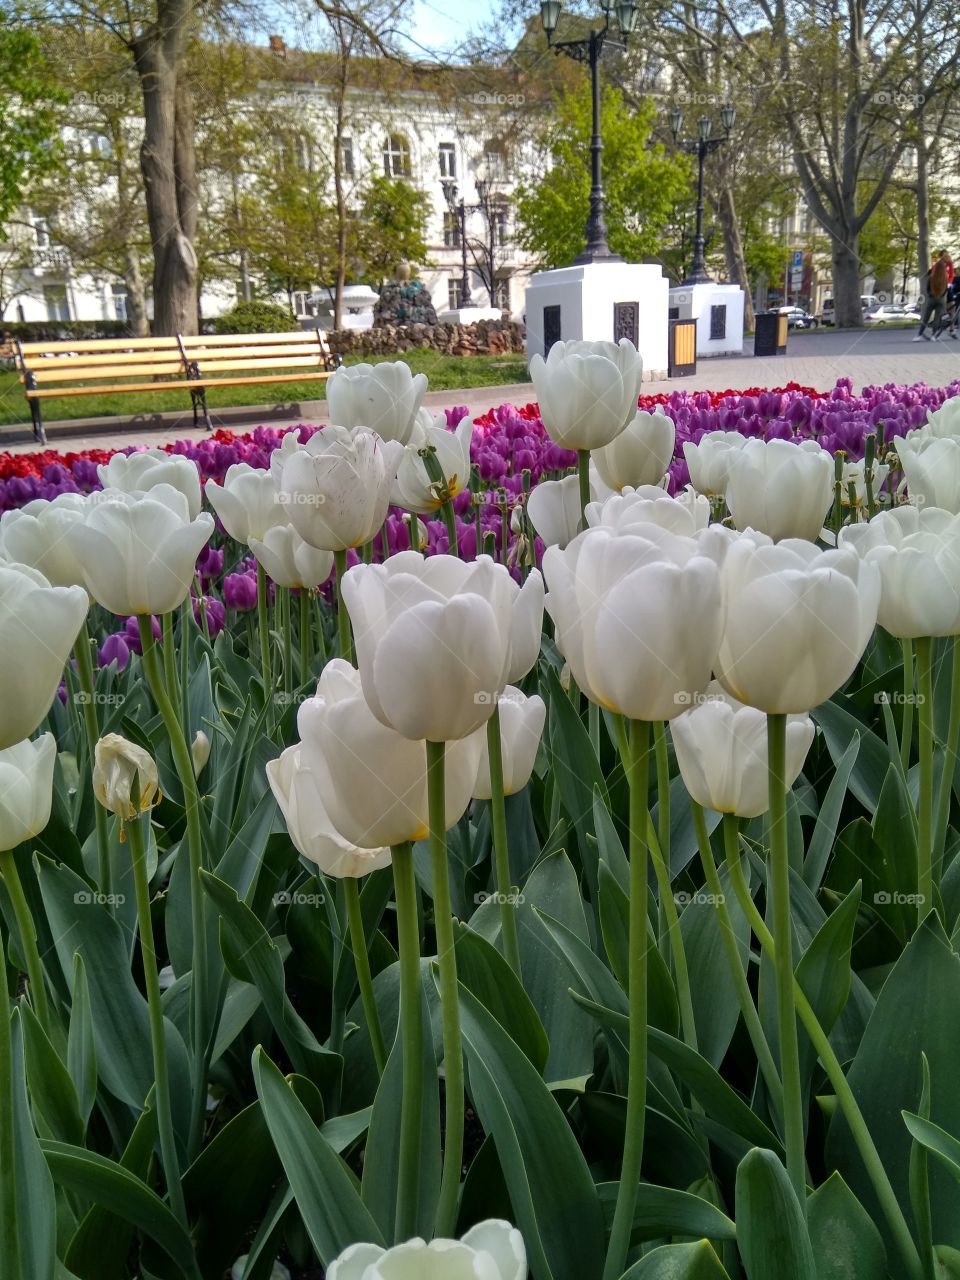 Разноцветные тюльпаны в городе. Красота. Отдых.
Multicolored tulips in the city. Beauty. Recreation.